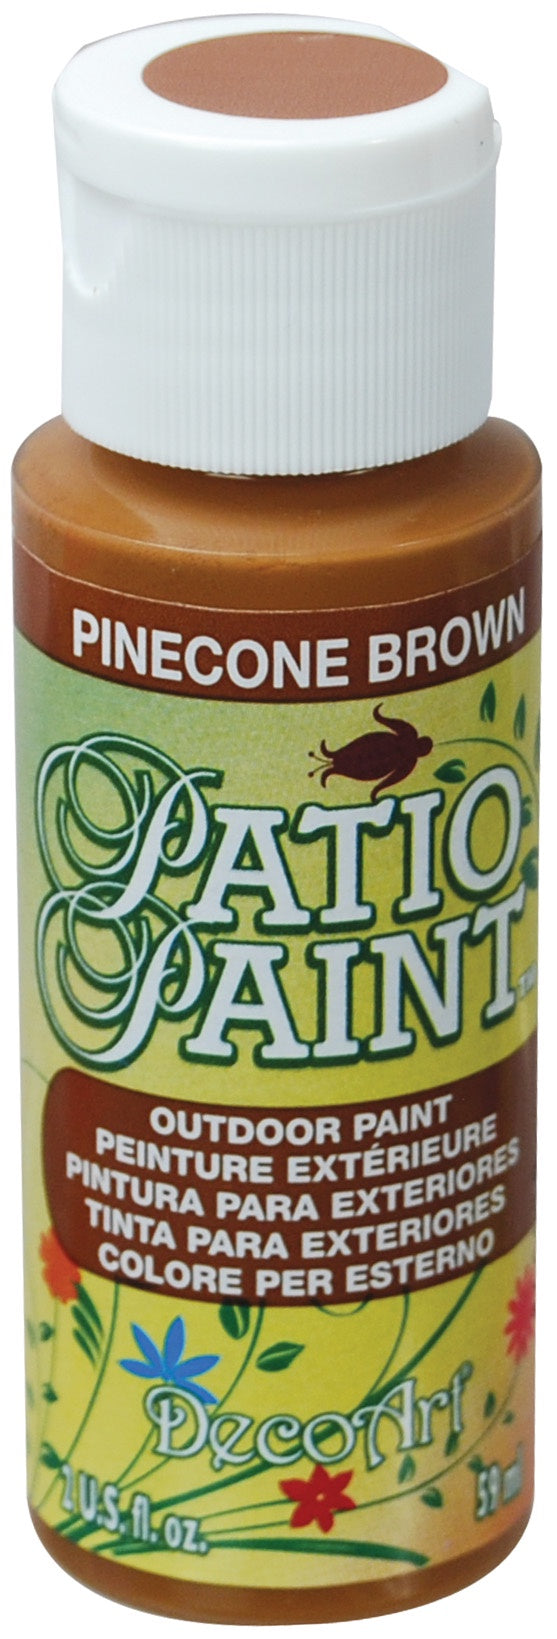 Deco Art Patio Paint 2oz - Pinecone Brown